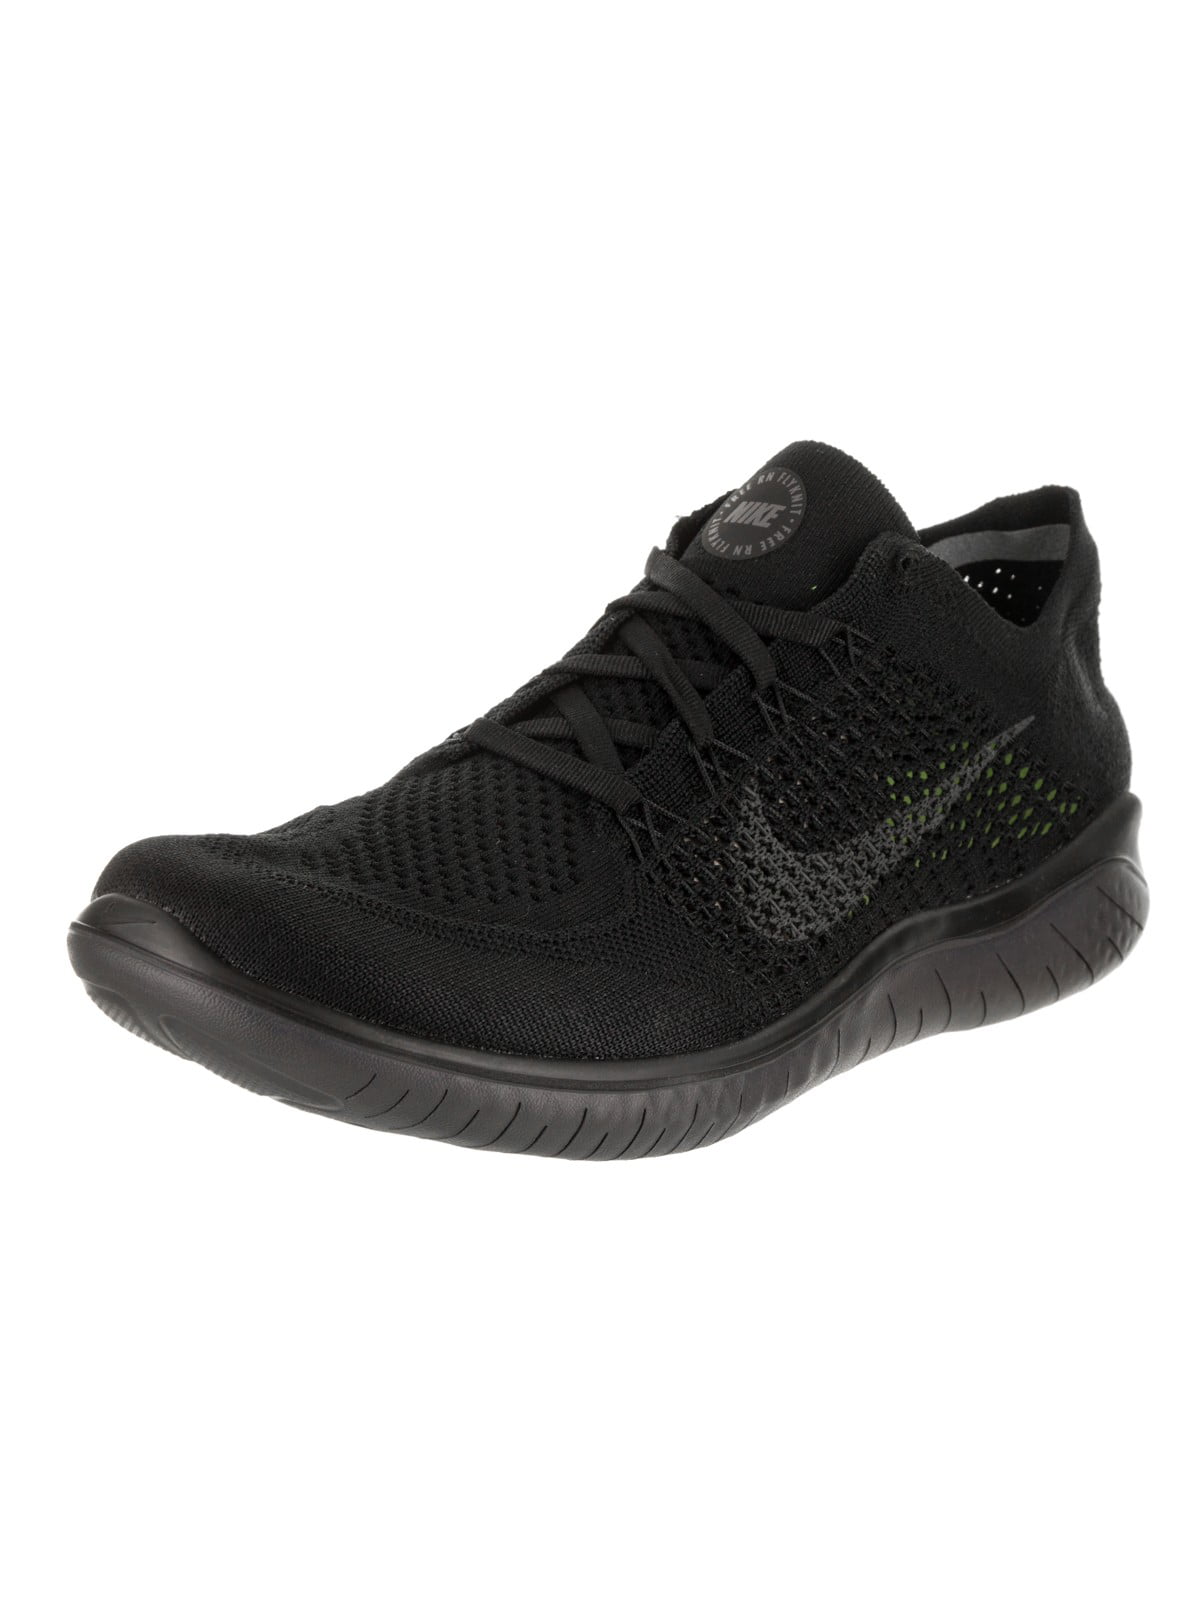 Nike Men's Free Rn Flyknit 2018 Shoe - Walmart.com